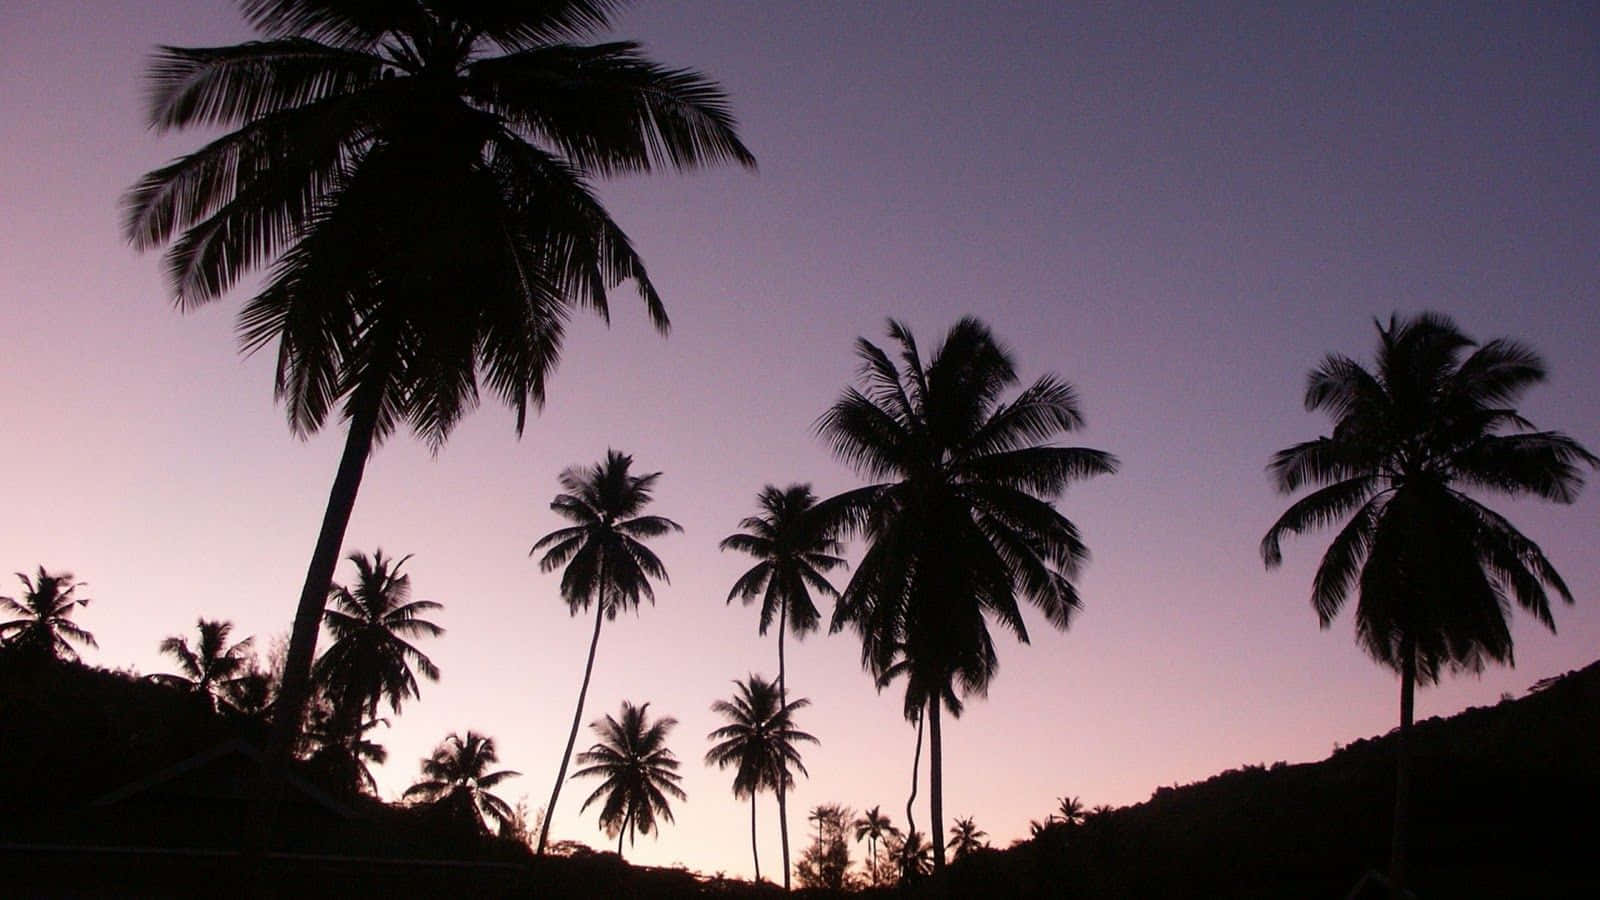 En fredelig æstetisk udsigt til en tropisk ø-paradis med en smuk palme i forgrunden. Wallpaper